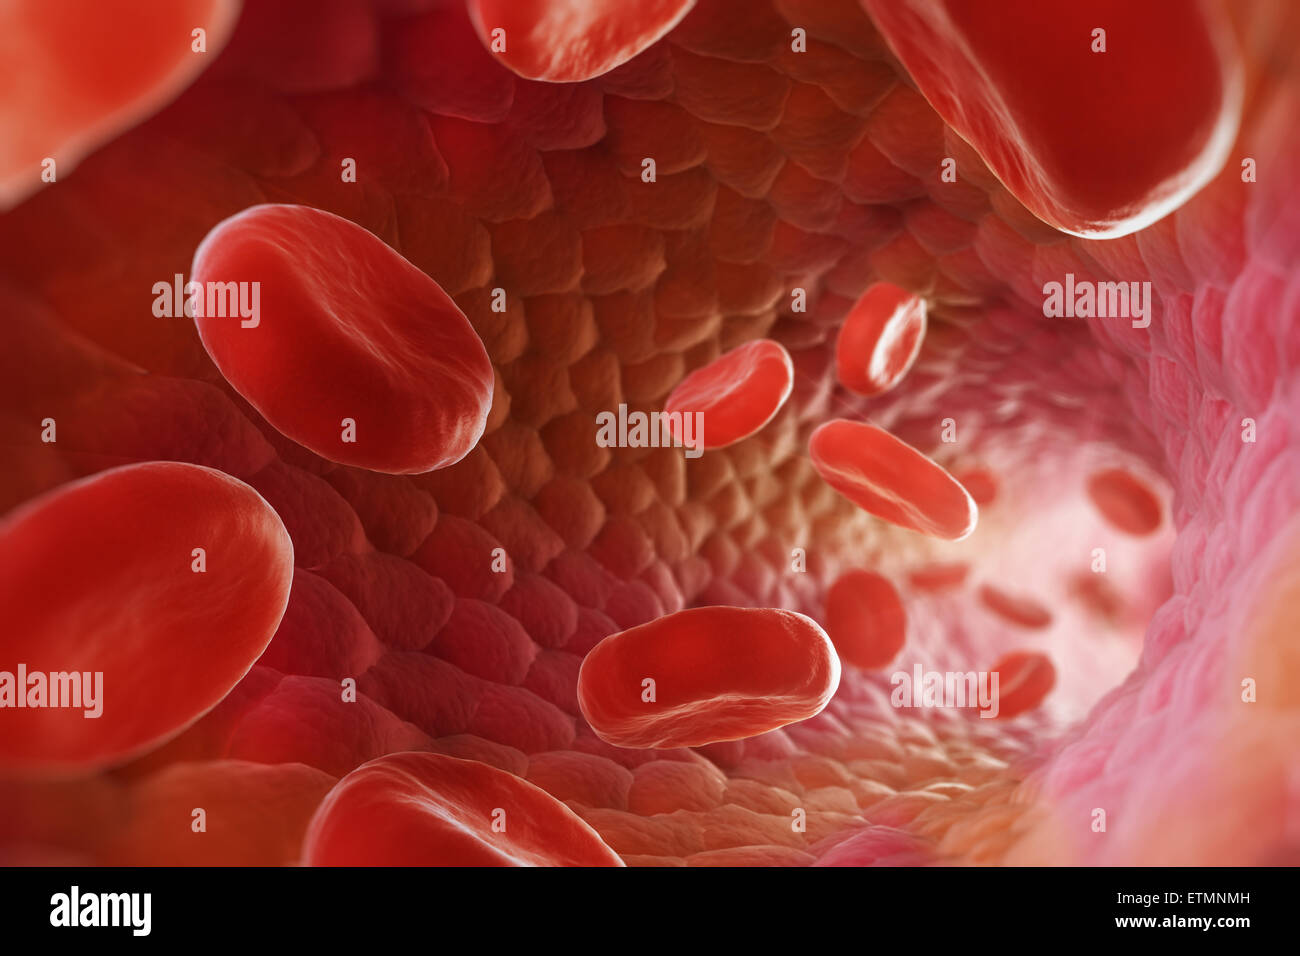 Stilizzata illustrazione che mostra le cellule rosse del sangue che fluisce attraverso il flusso sanguigno. Foto Stock